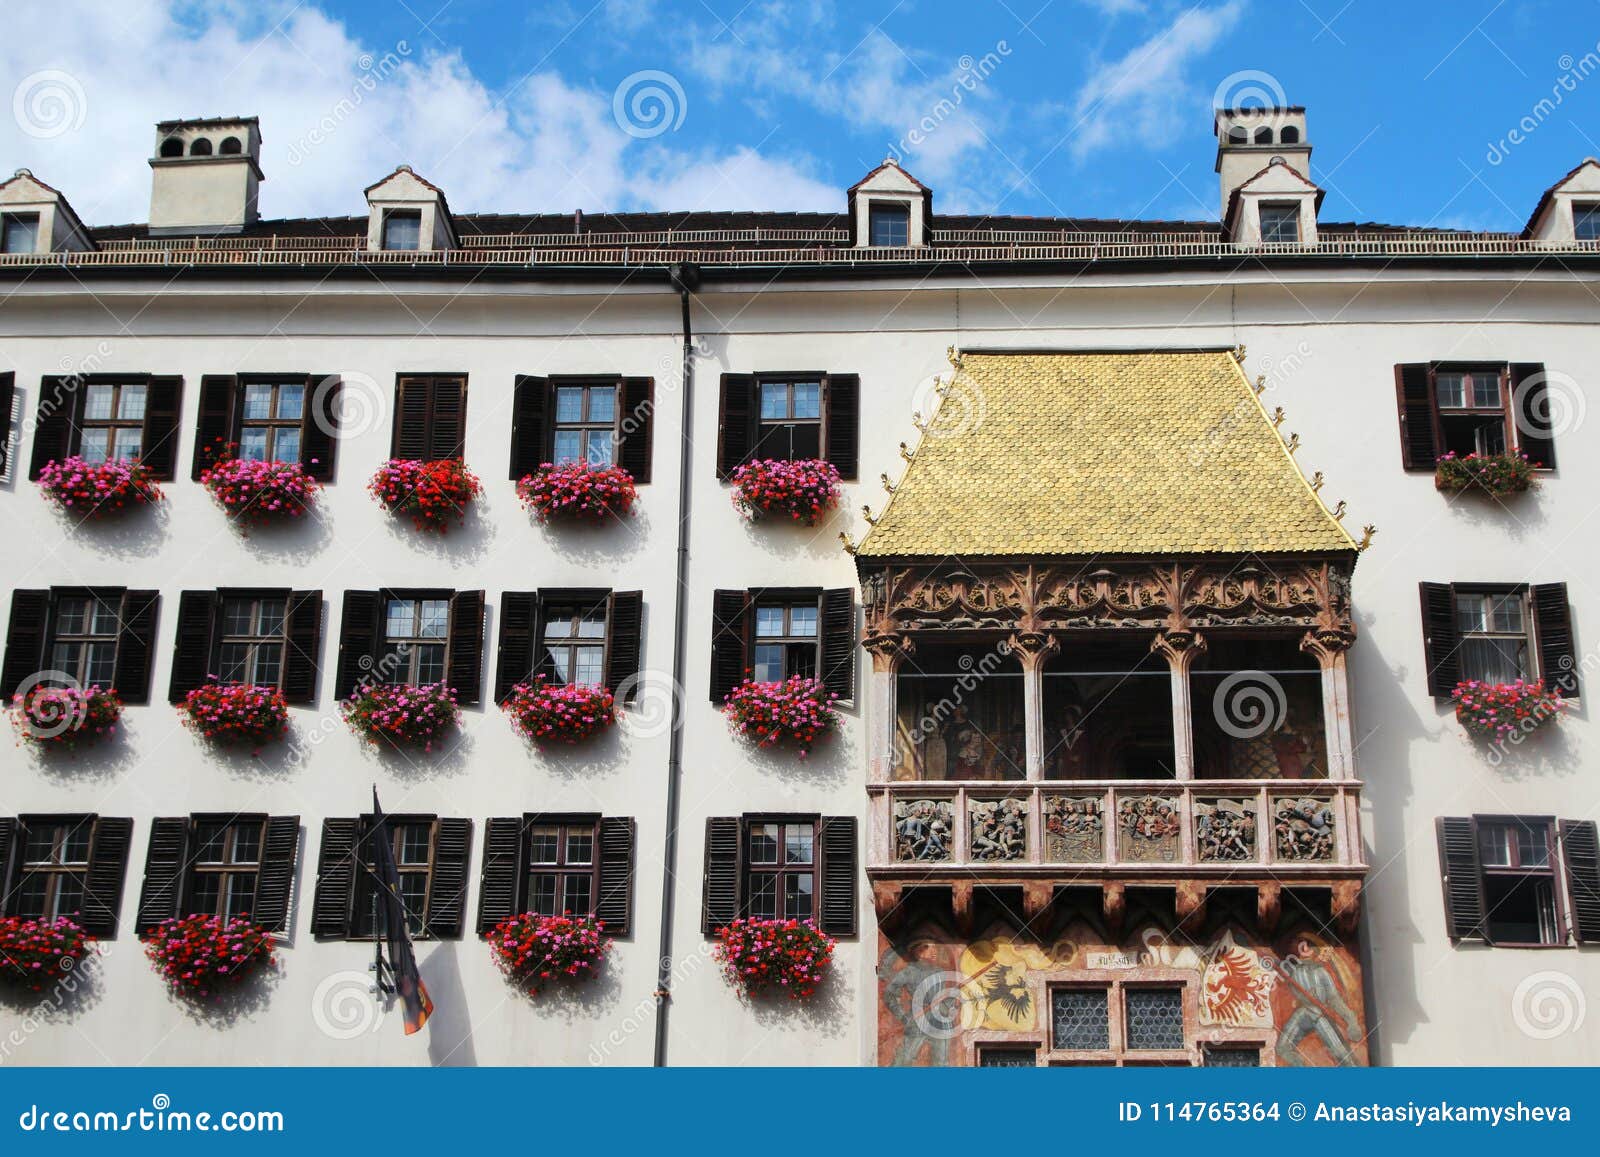 the goldenes dachl golden roof, innsbruck, austria